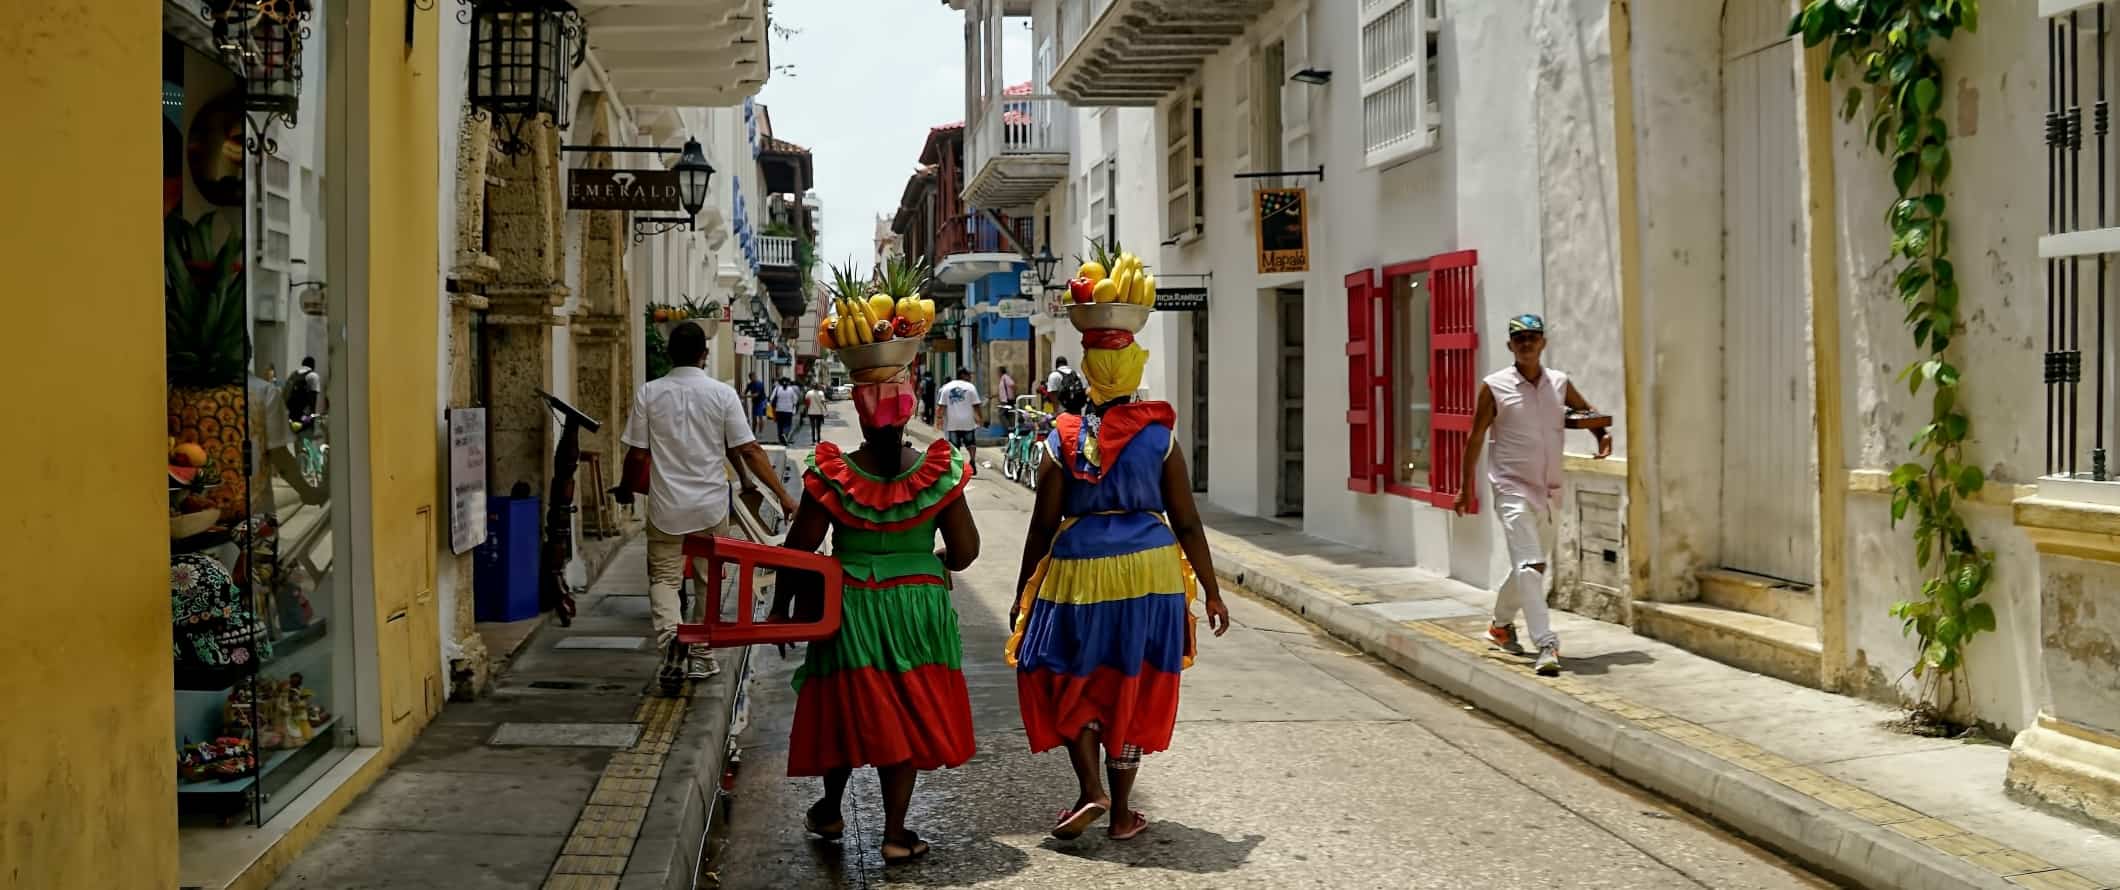 Duas mulheres em vestidos brilhantes e coloridos caminham pela rua com cestas de frutas na cabeça em Cartagena, Colômbia